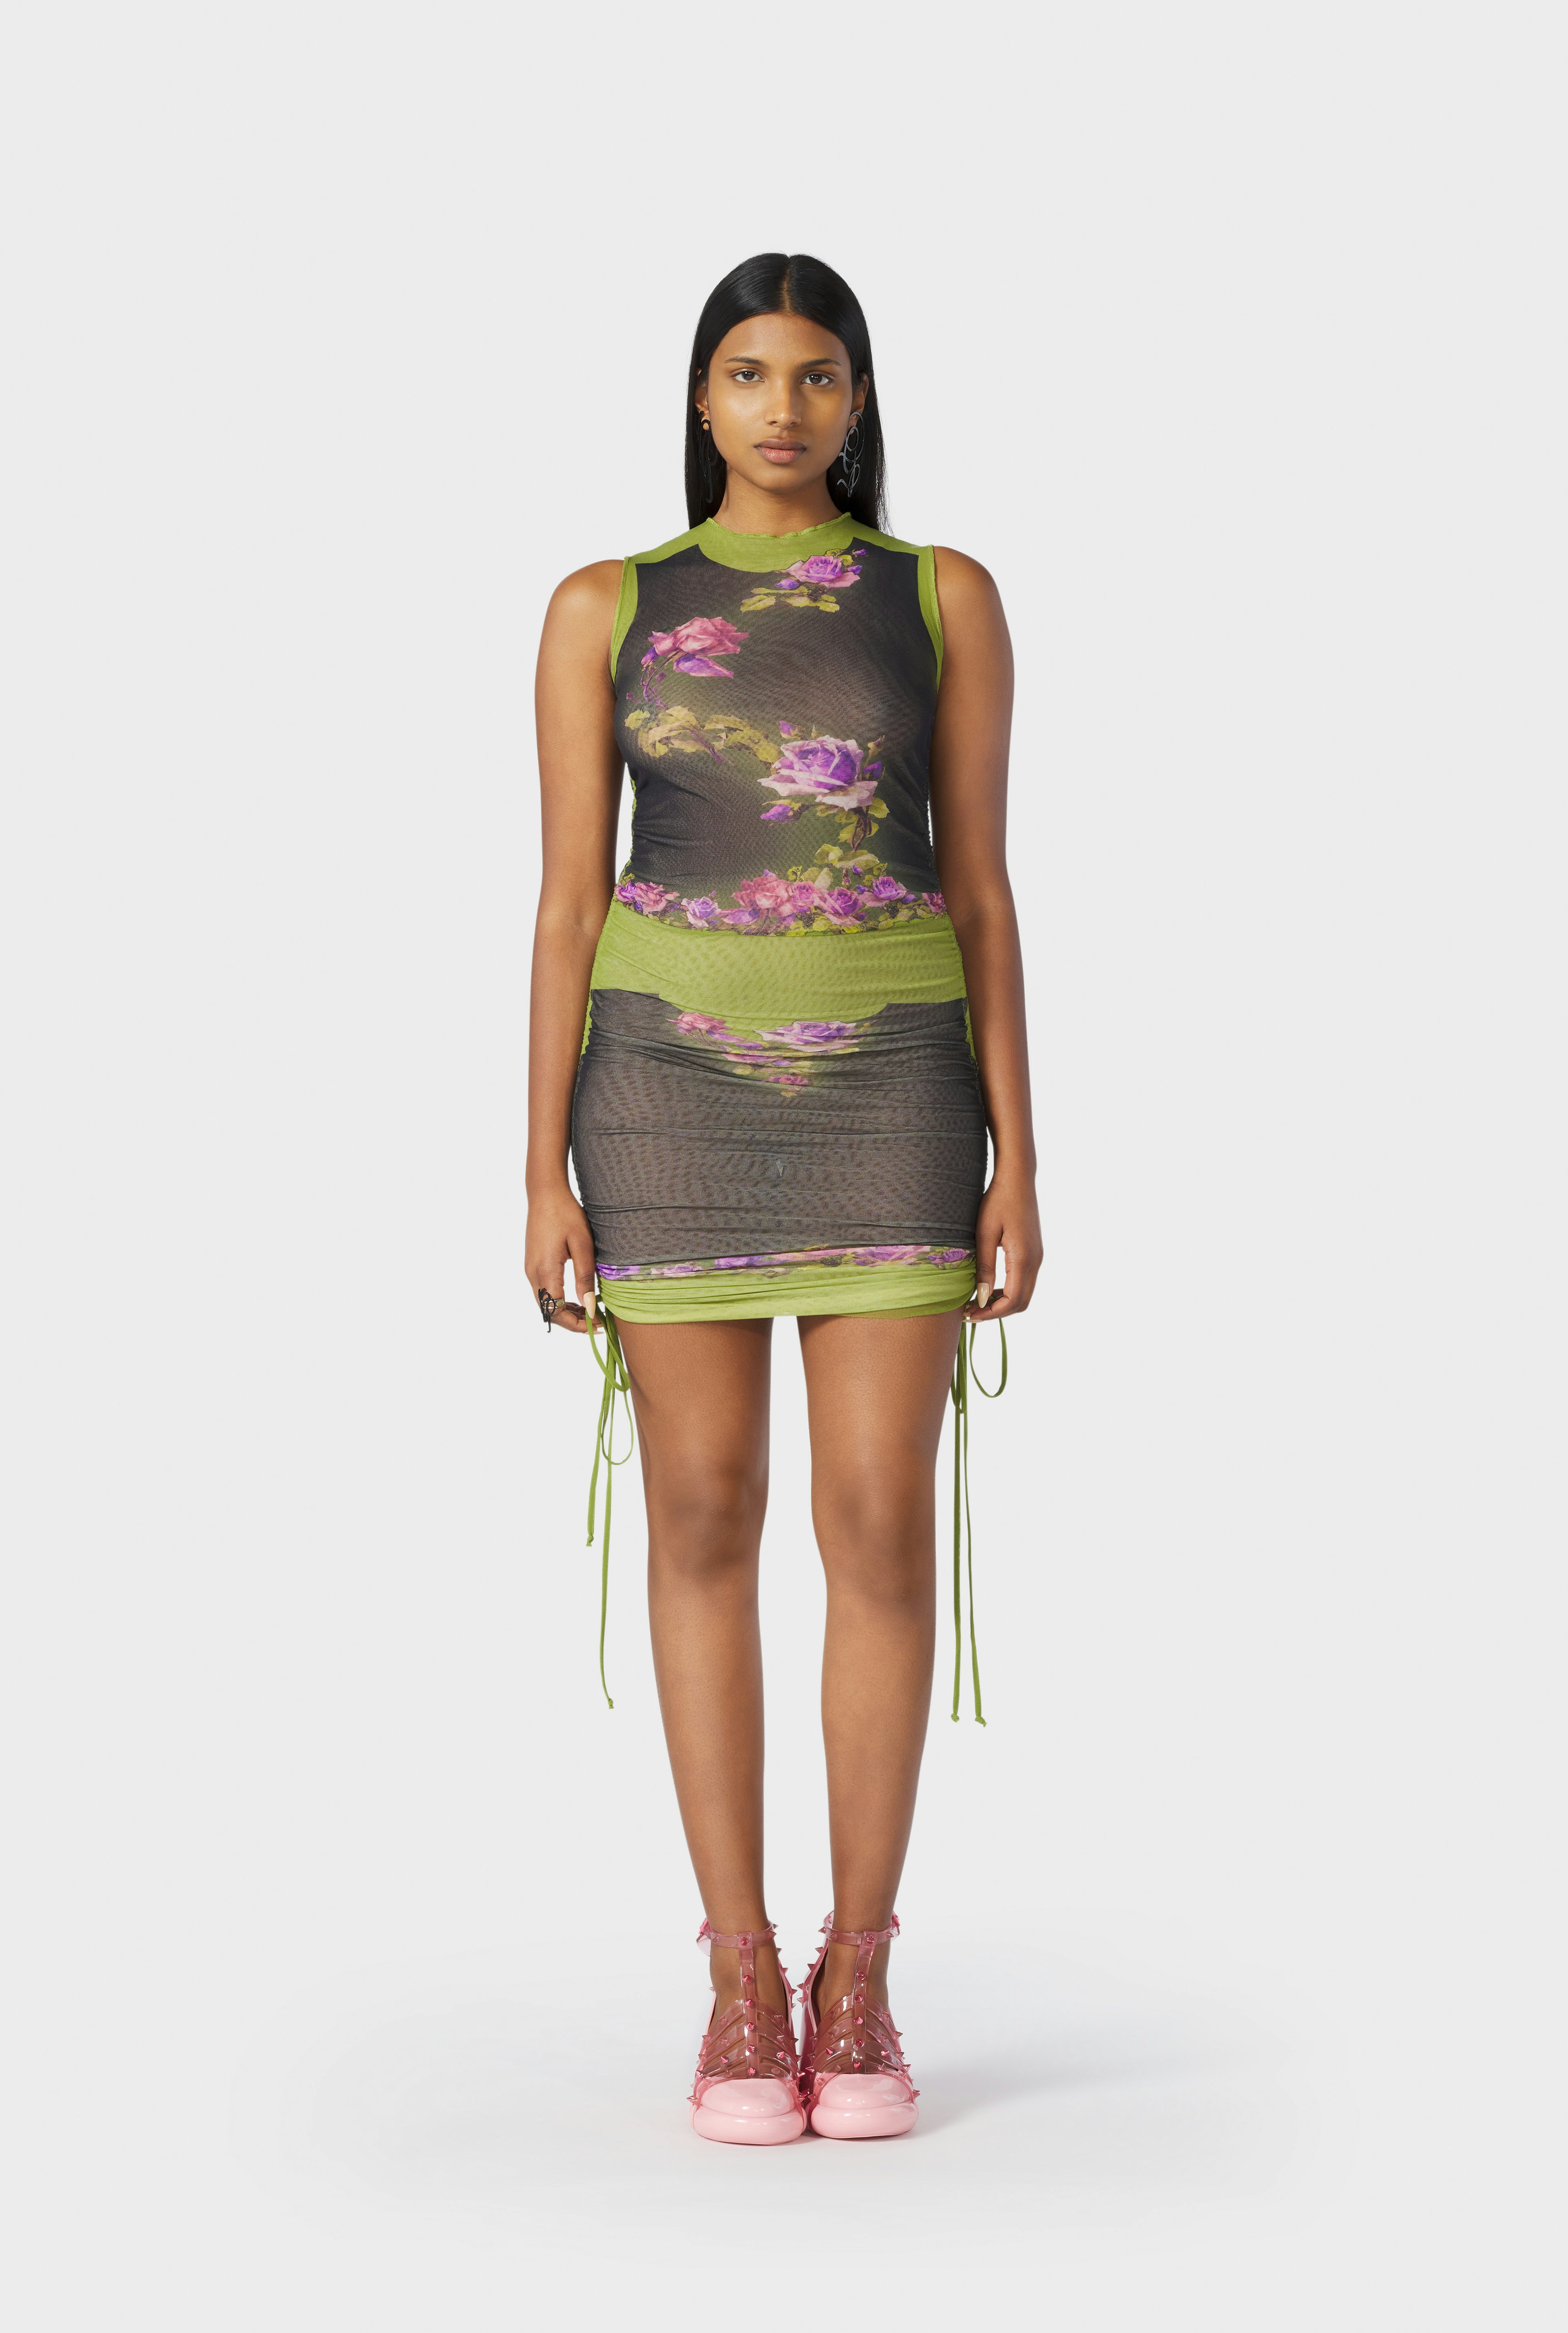 The Draped Green “Fleurs Petit Grand” Dress